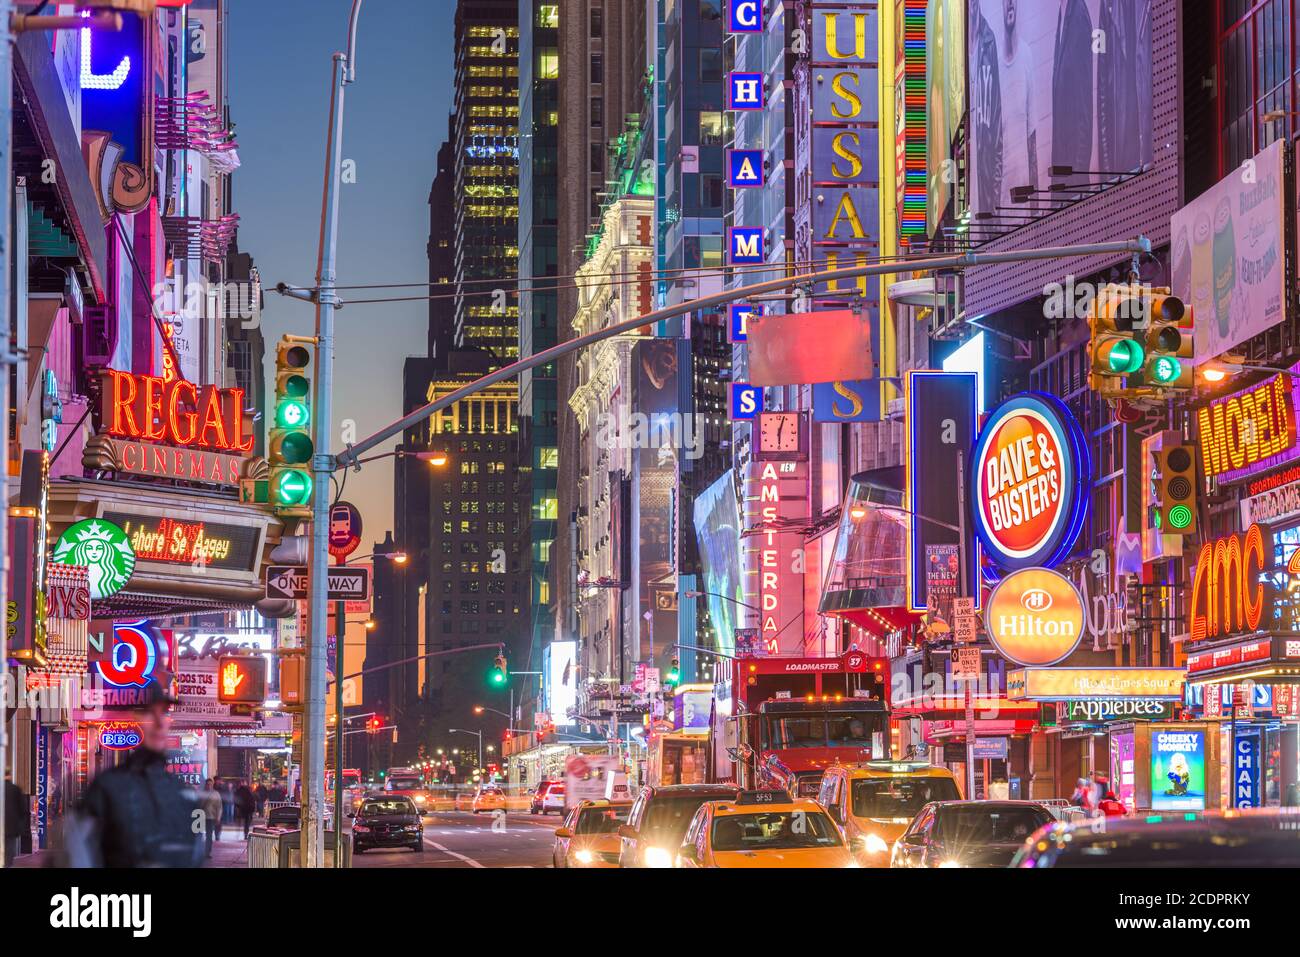 NEW YORK CITY - Novembre 14, 2016: il traffico si muove sotto le insegne della 42nd Street. Il Landmark street è sede di numerosi teatri, negozi, Foto Stock